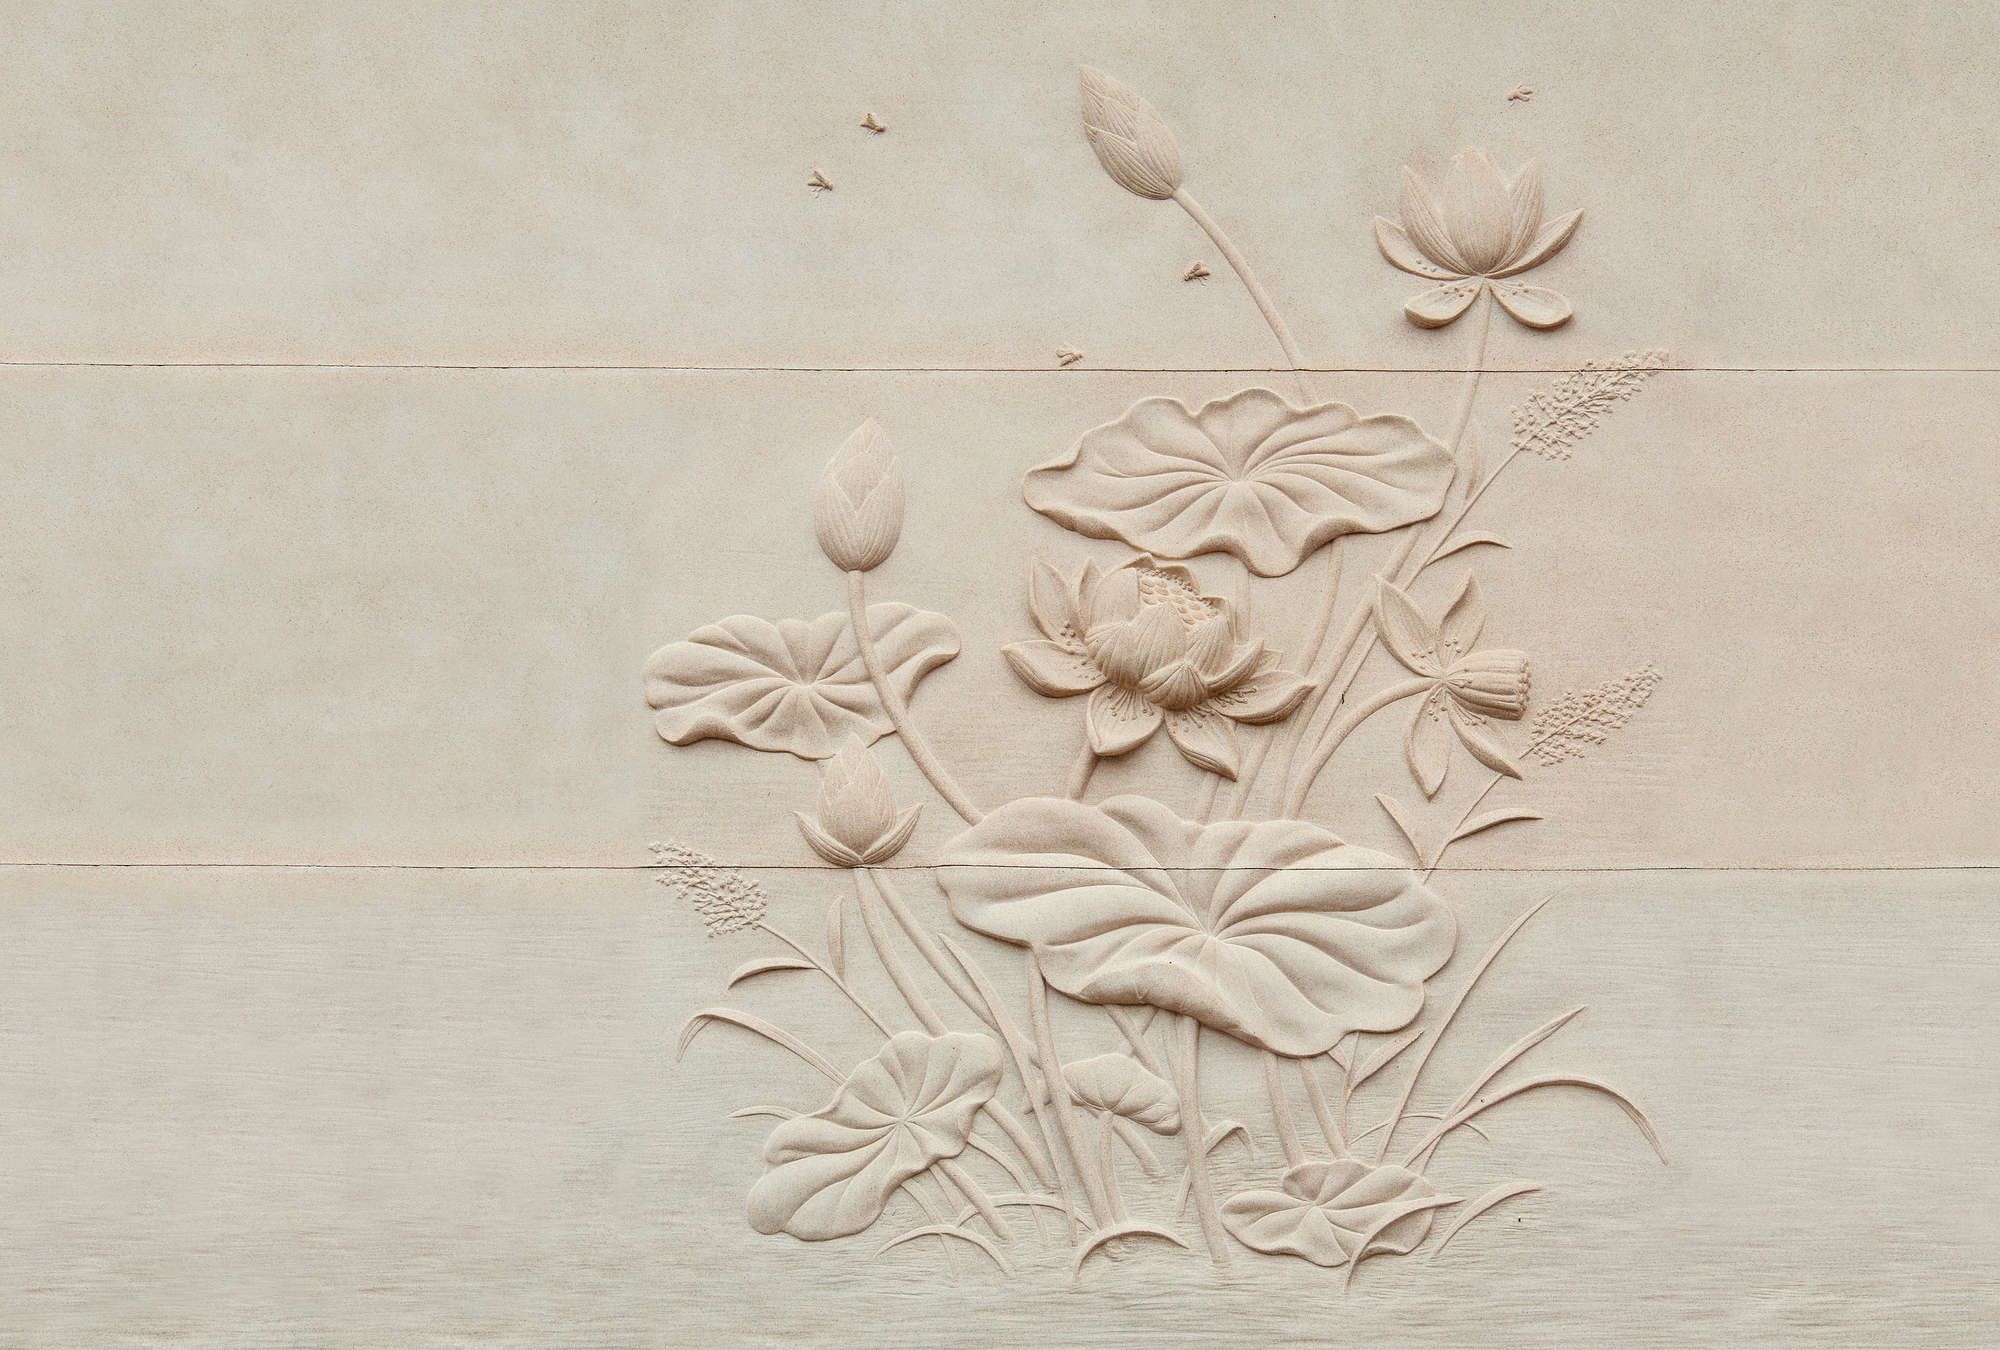             Photo wallpaper »fiore« - Floral relief on concrete structure - Matt, Smooth non-woven fabric
        